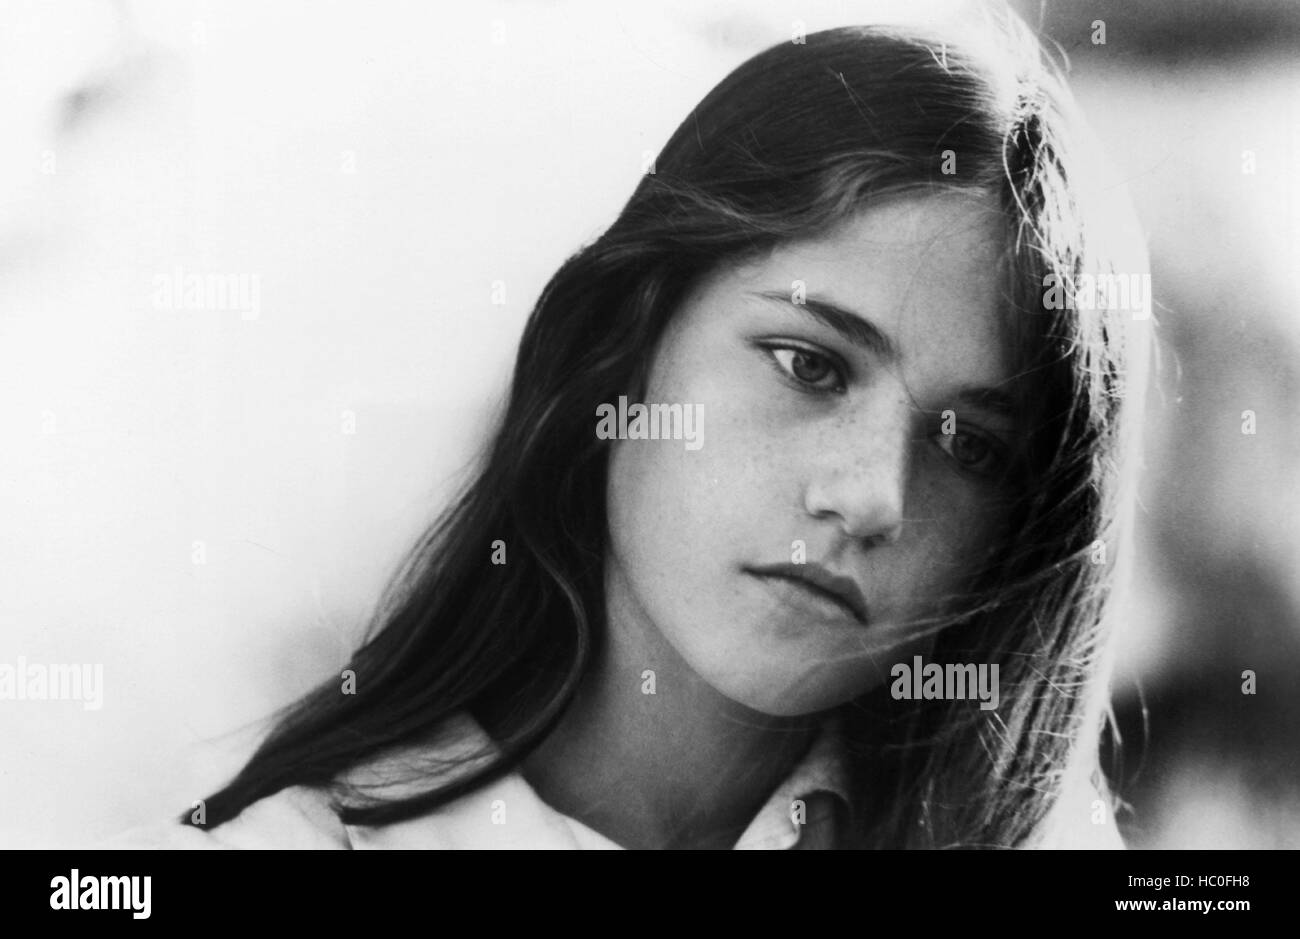 L Adolescente An Adolescent Girl 1979